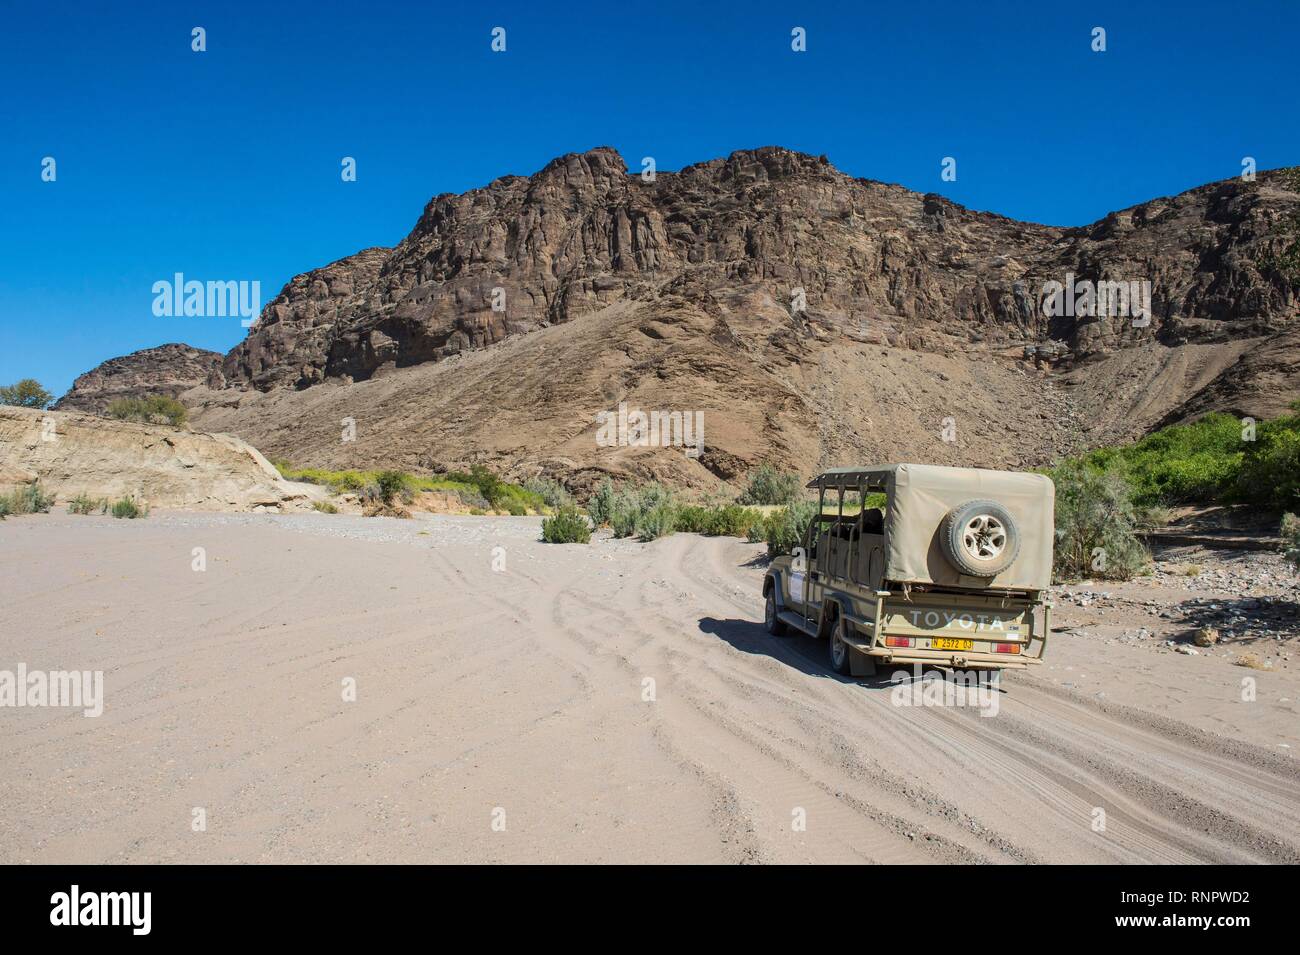 Touristische Jeep fahren durch den tiefen Sand auf der Suche nach Safari, Khurab finden, nördliche Namibia, Namibia Stockfoto